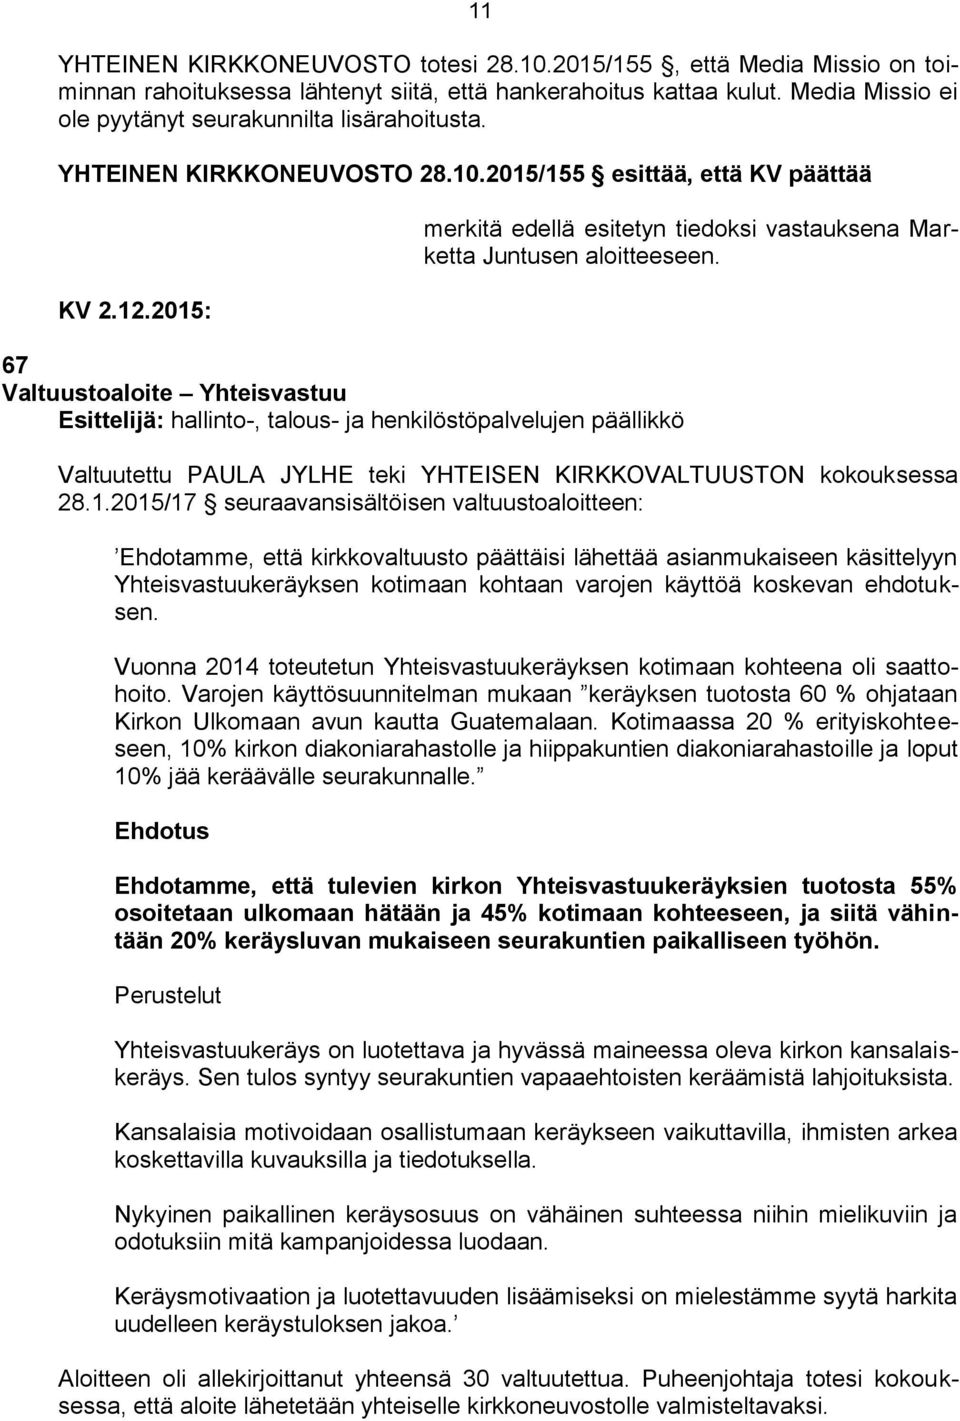 2015/155 esittää, että KV päättää 67 Valtuustoaloite Yhteisvastuu Esittelijä: hallinto-, talous- ja henkilöstöpalvelujen päällikkö merkitä edellä esitetyn tiedoksi vastauksena Marketta Juntusen